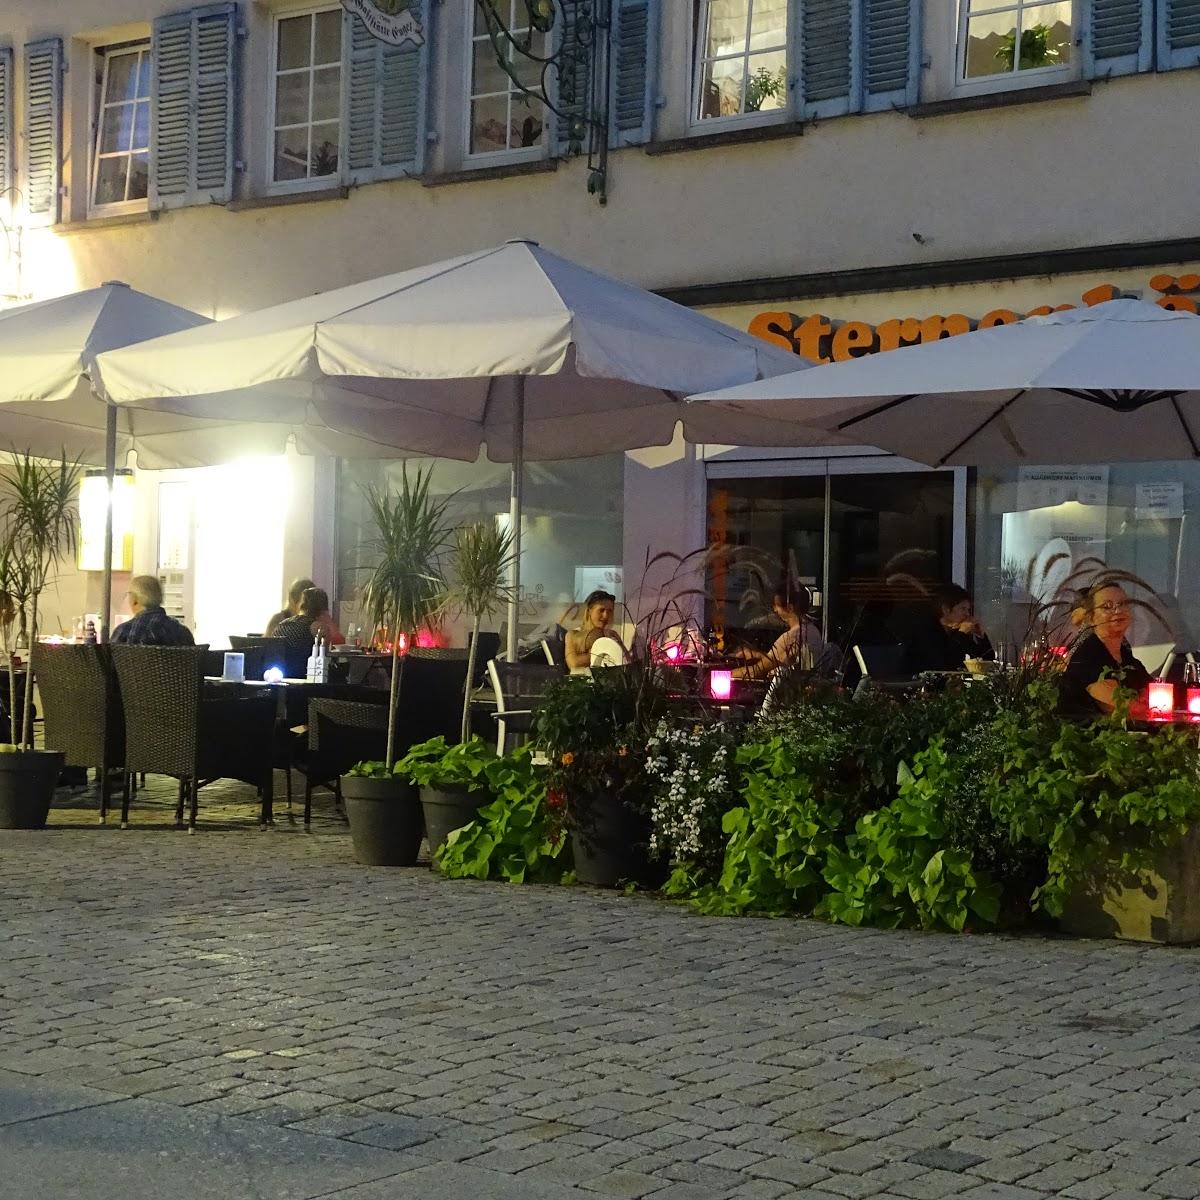 Restaurant "ENGEL Griechisches Restaurant" in Rottenburg am Neckar